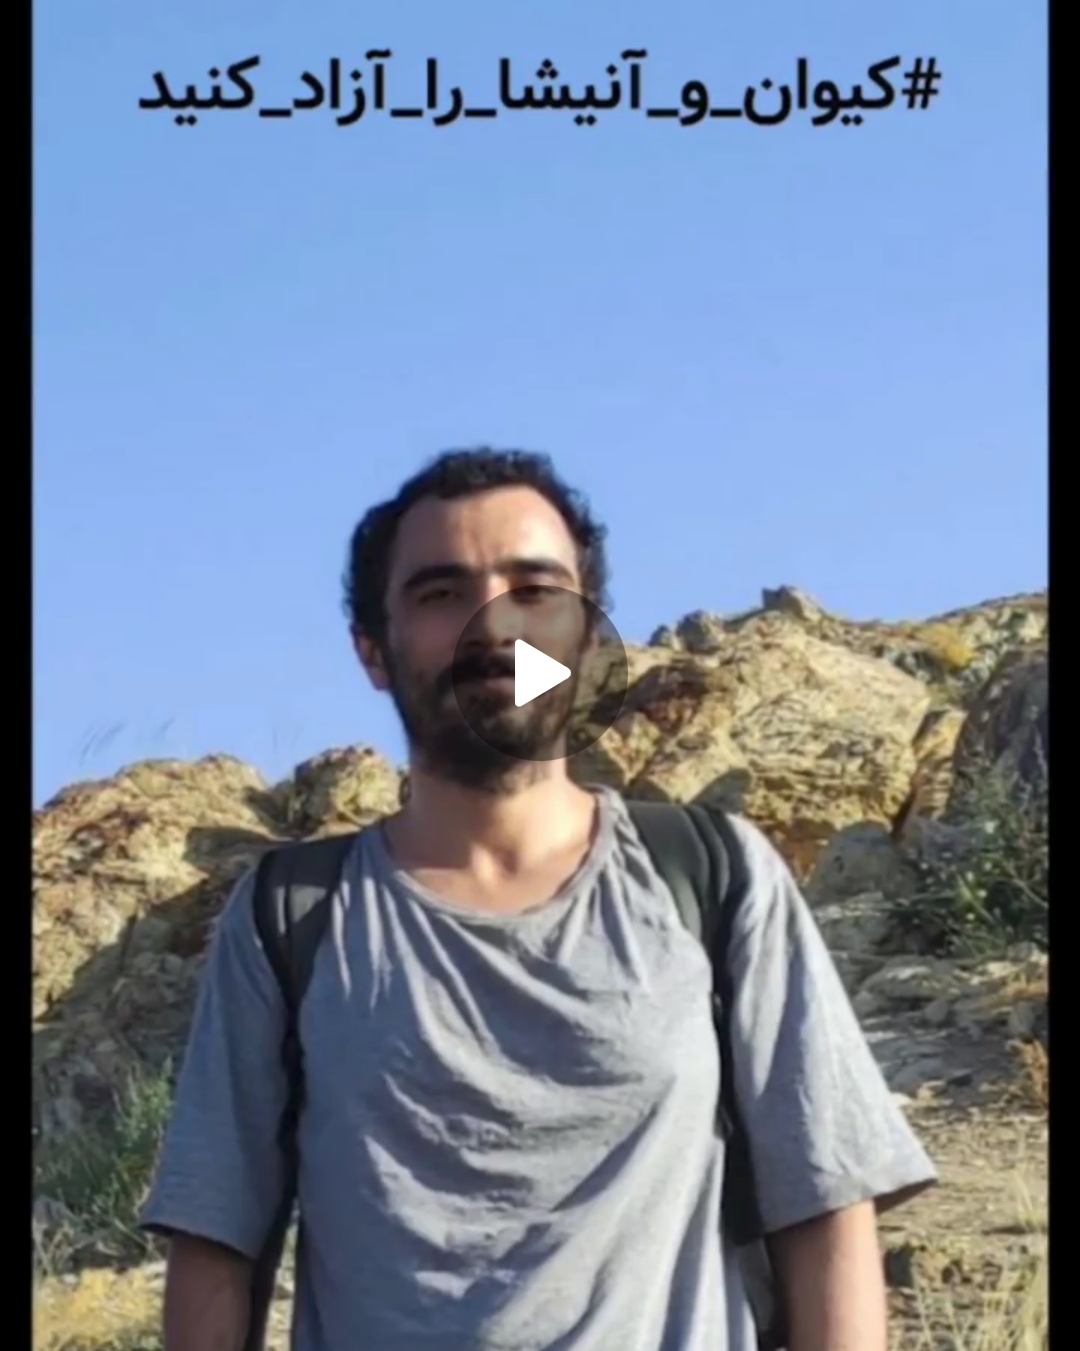 پیام کوتاه کیوان مهتدی از زندان ، پس از ۹۰ روز بازداشت